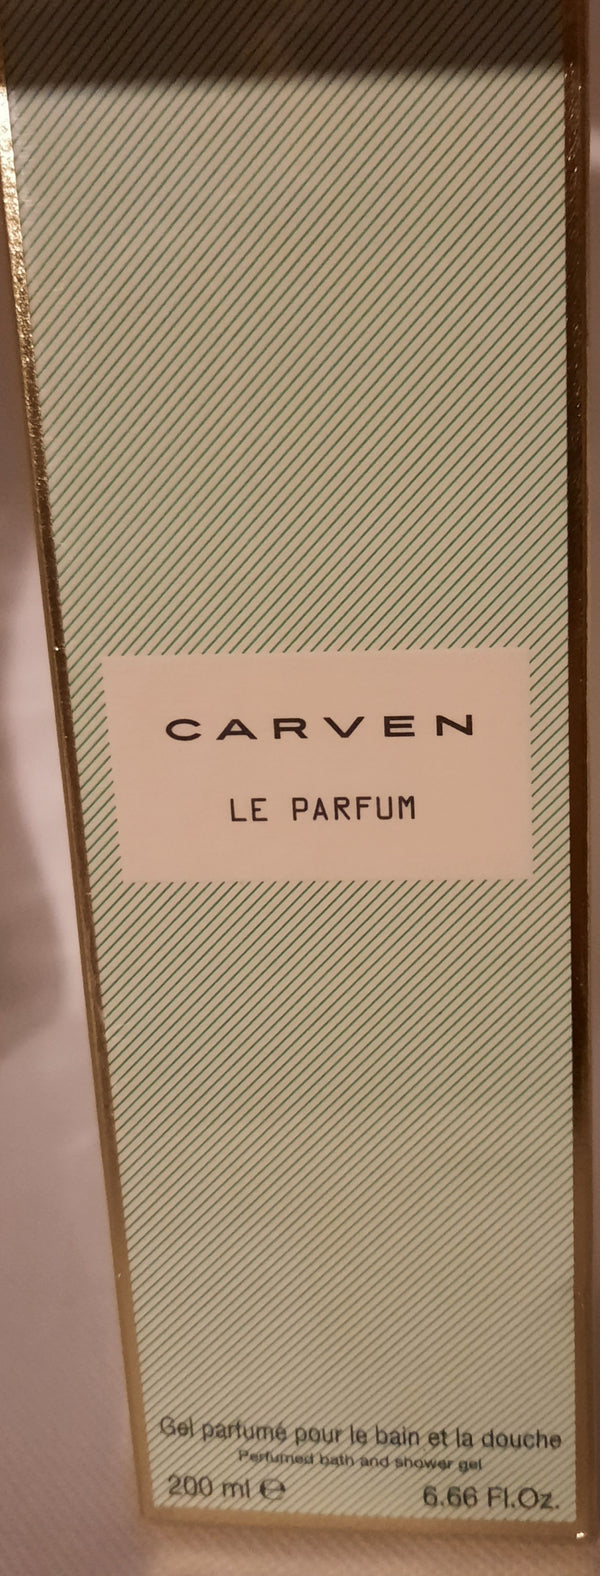 CARVEN LE PARFUM Gel Parfumé pour le bain et la douche 200ml